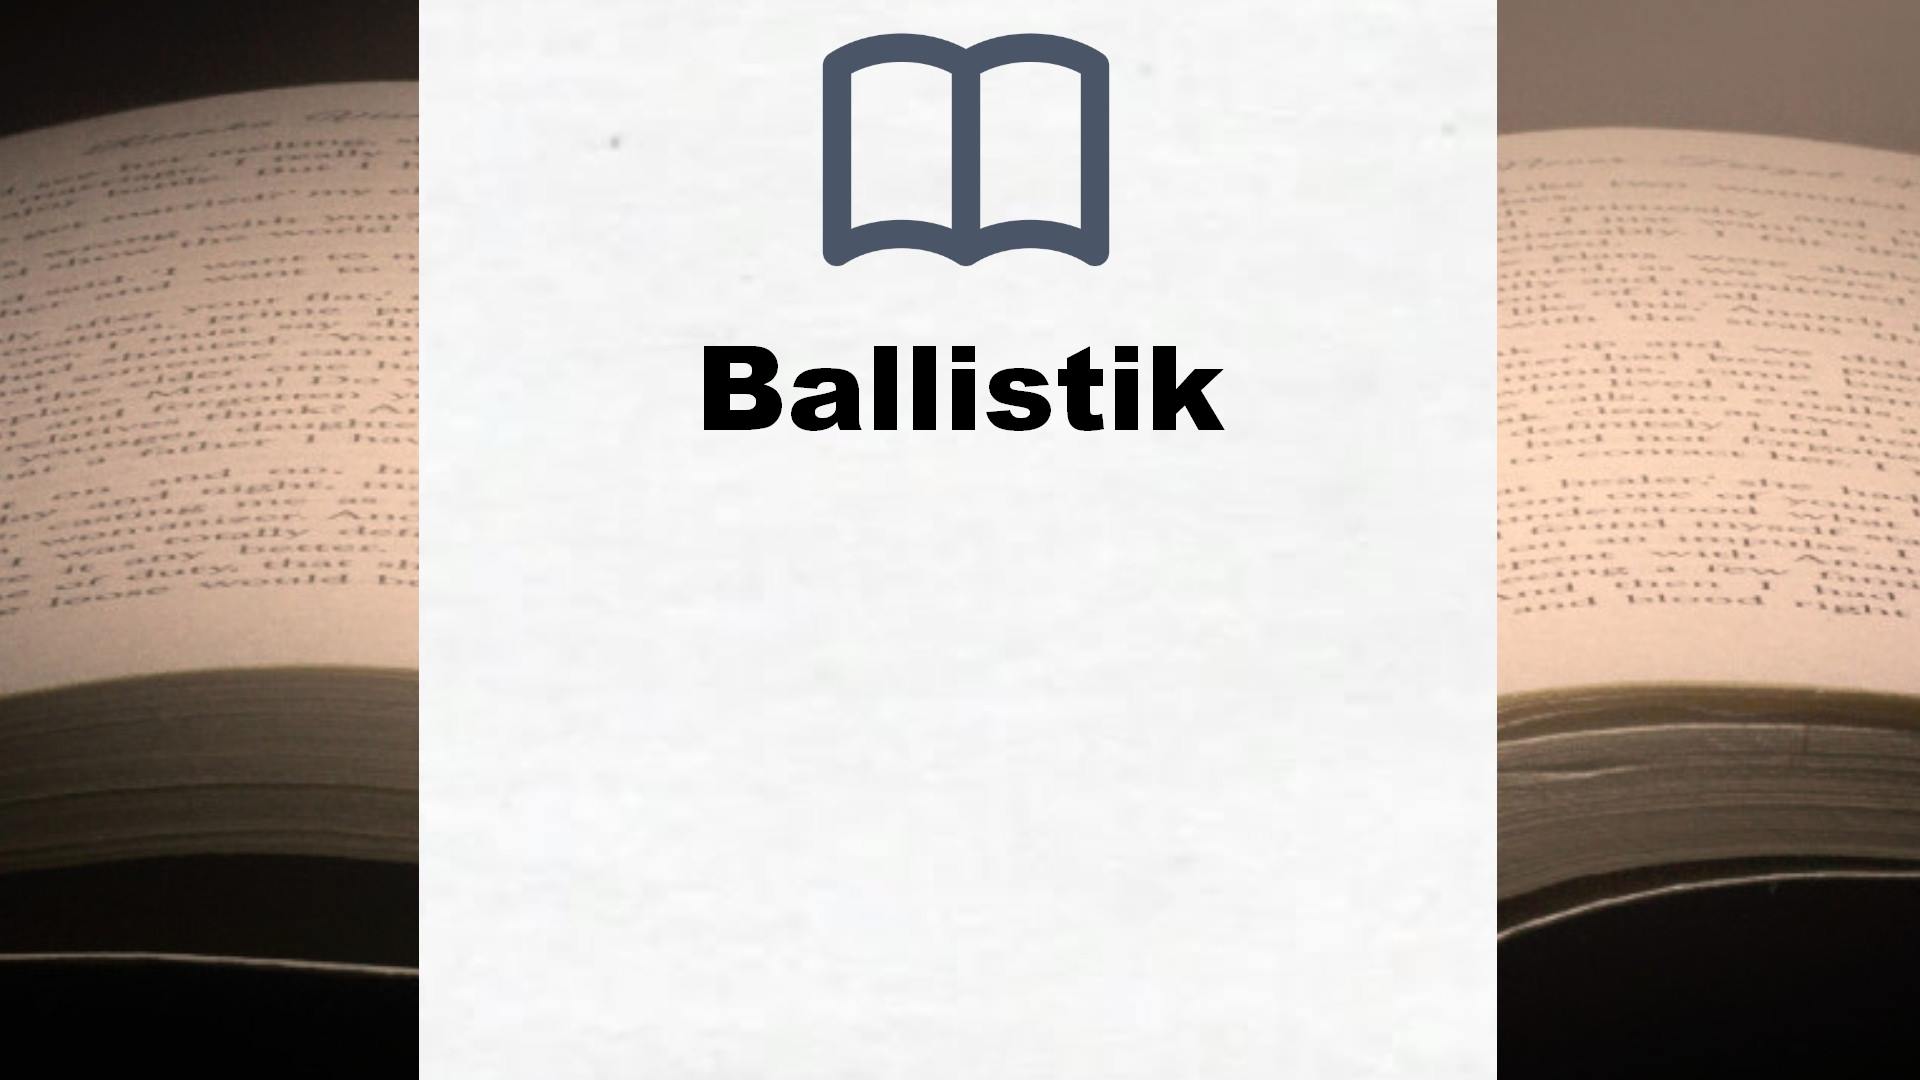 Bücher über Ballistik